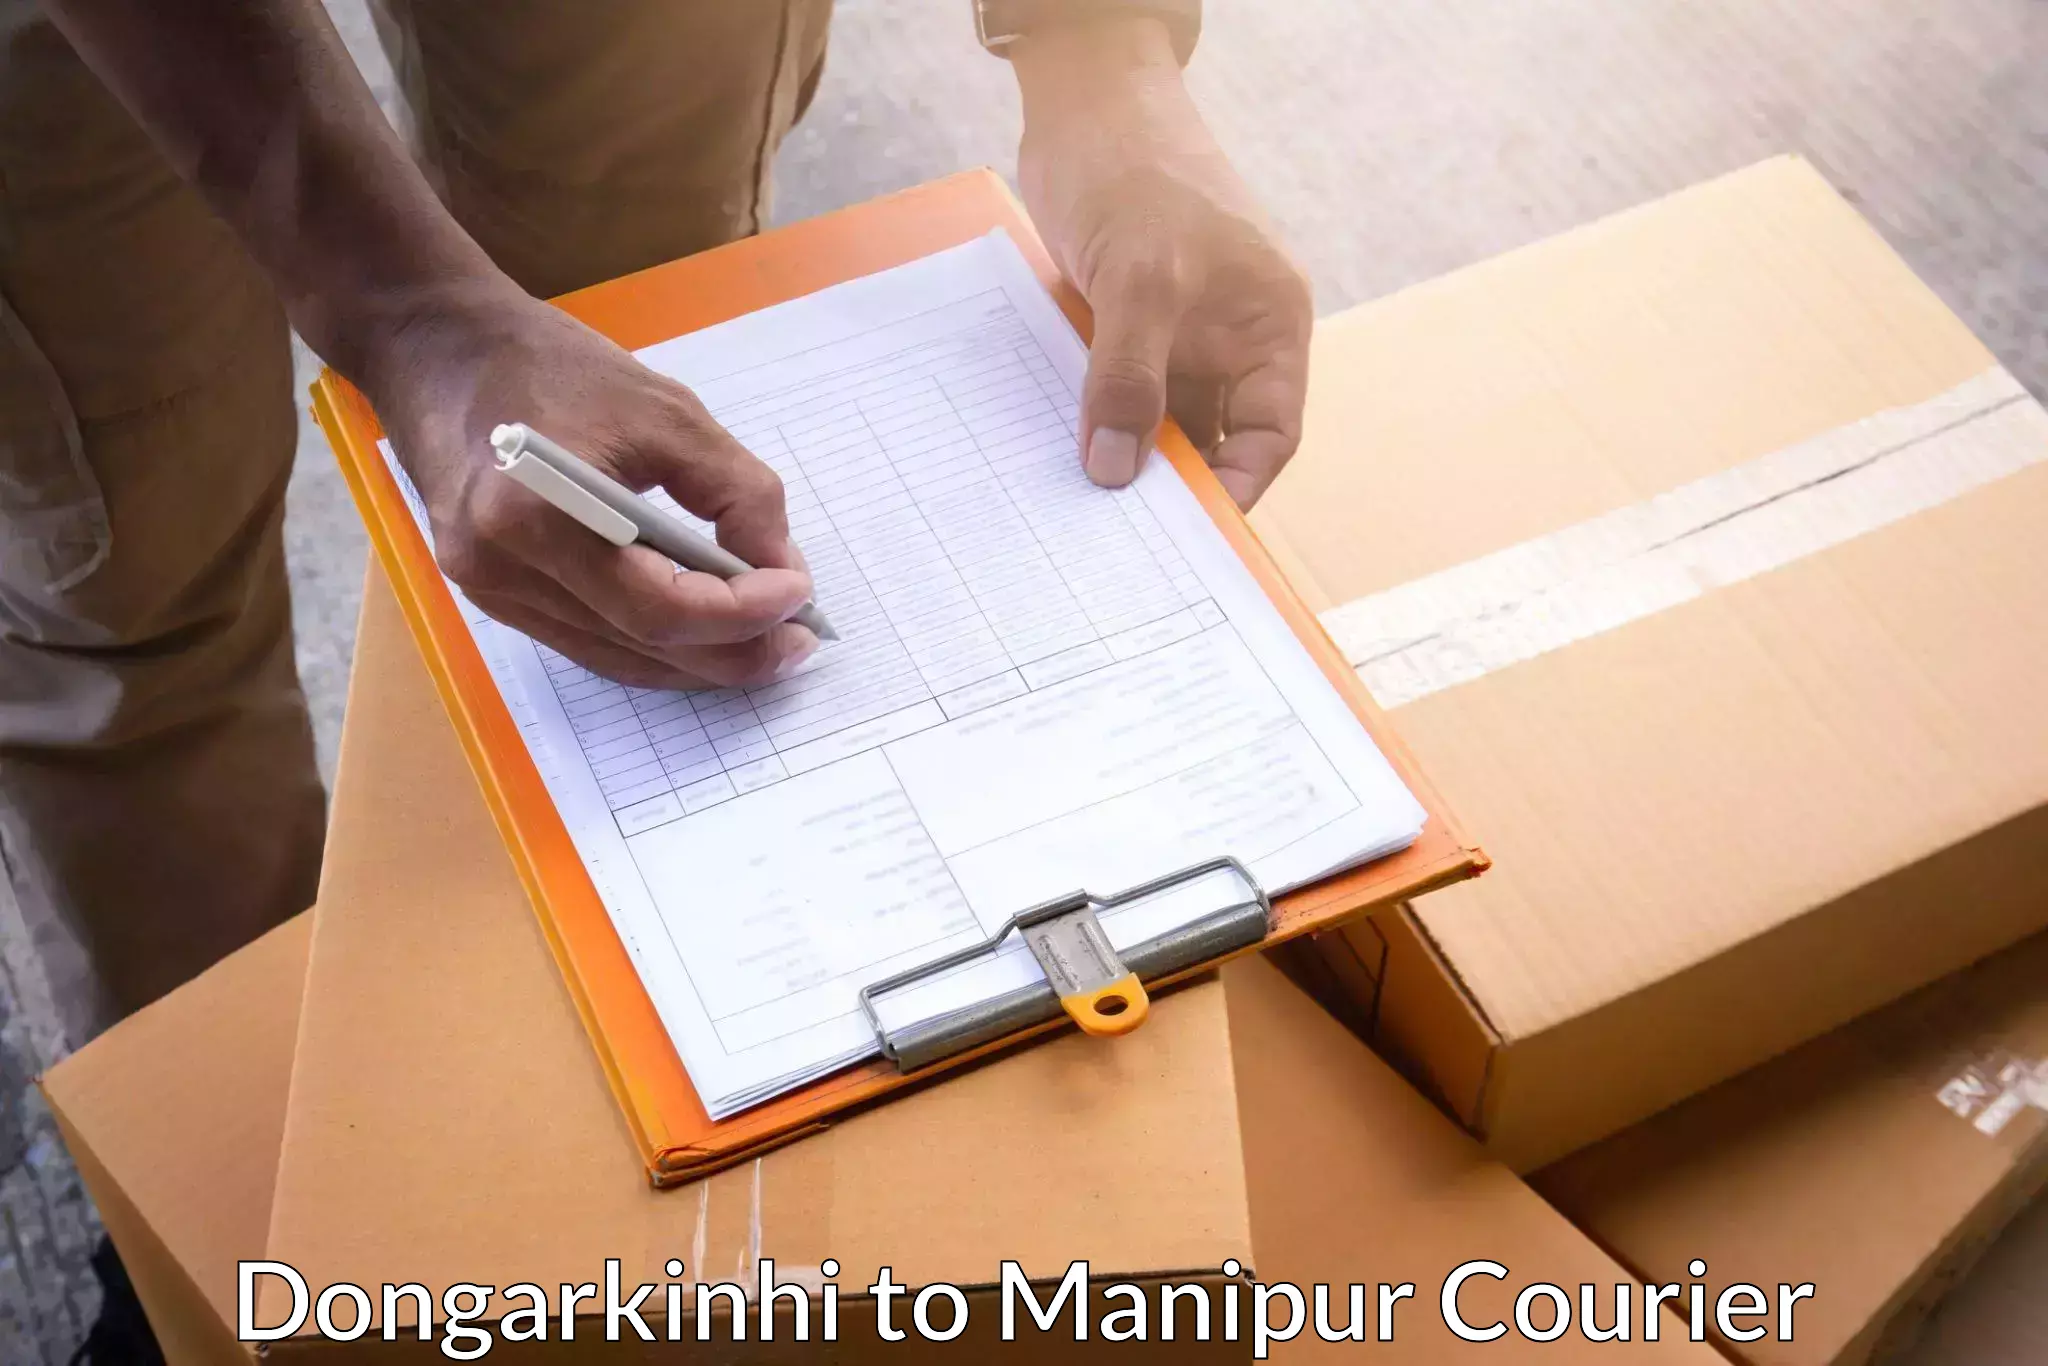 Global shipping solutions Dongarkinhi to Senapati